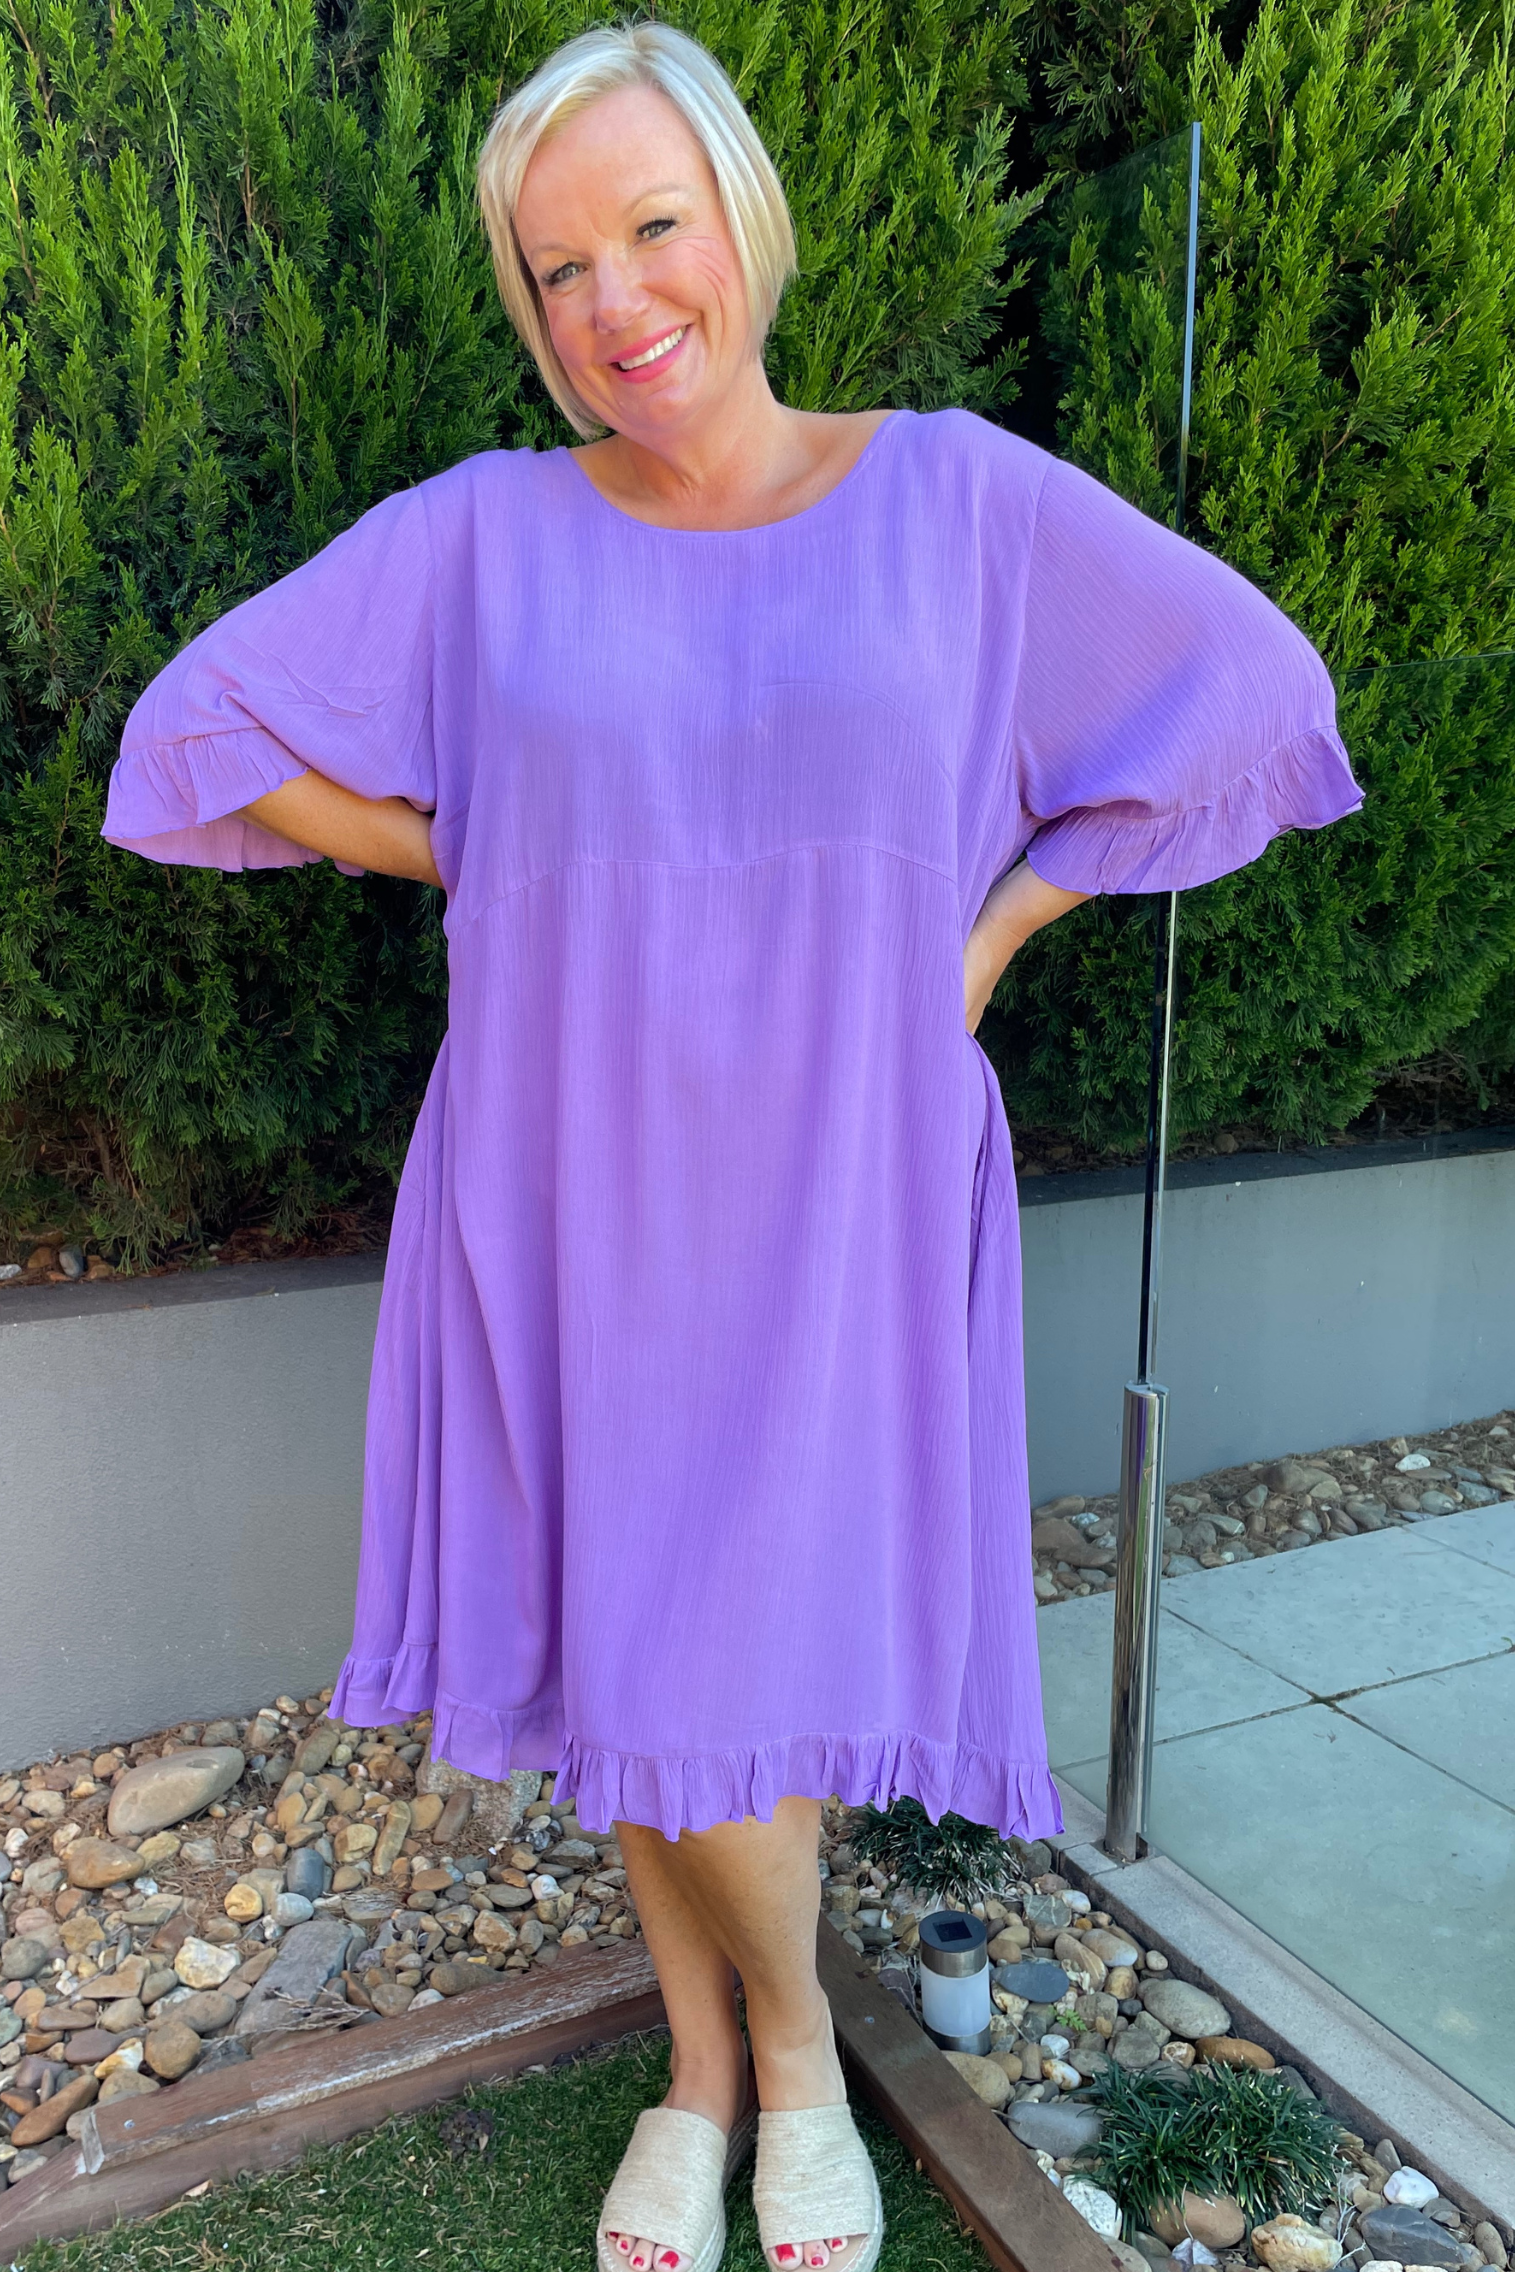 Kita Ku modelling a lilac mauve leonie short sleeve dress by a pool fence